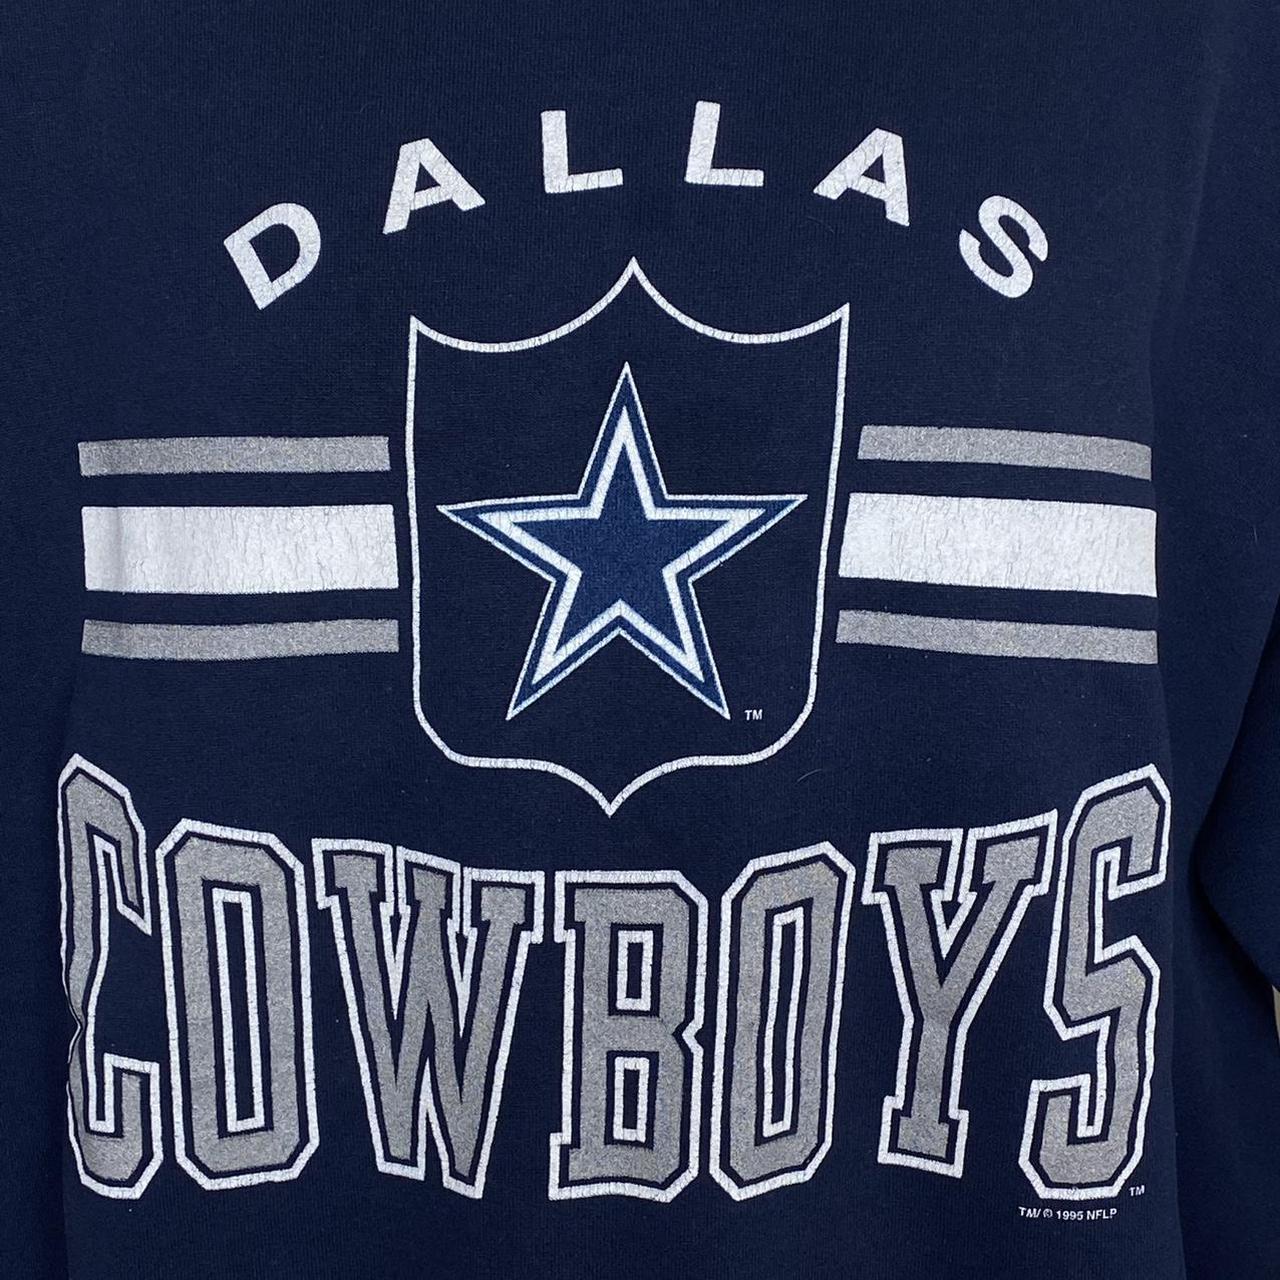 Vintage 90s Dallas cowboys crewneck sweatshirt ! - Depop